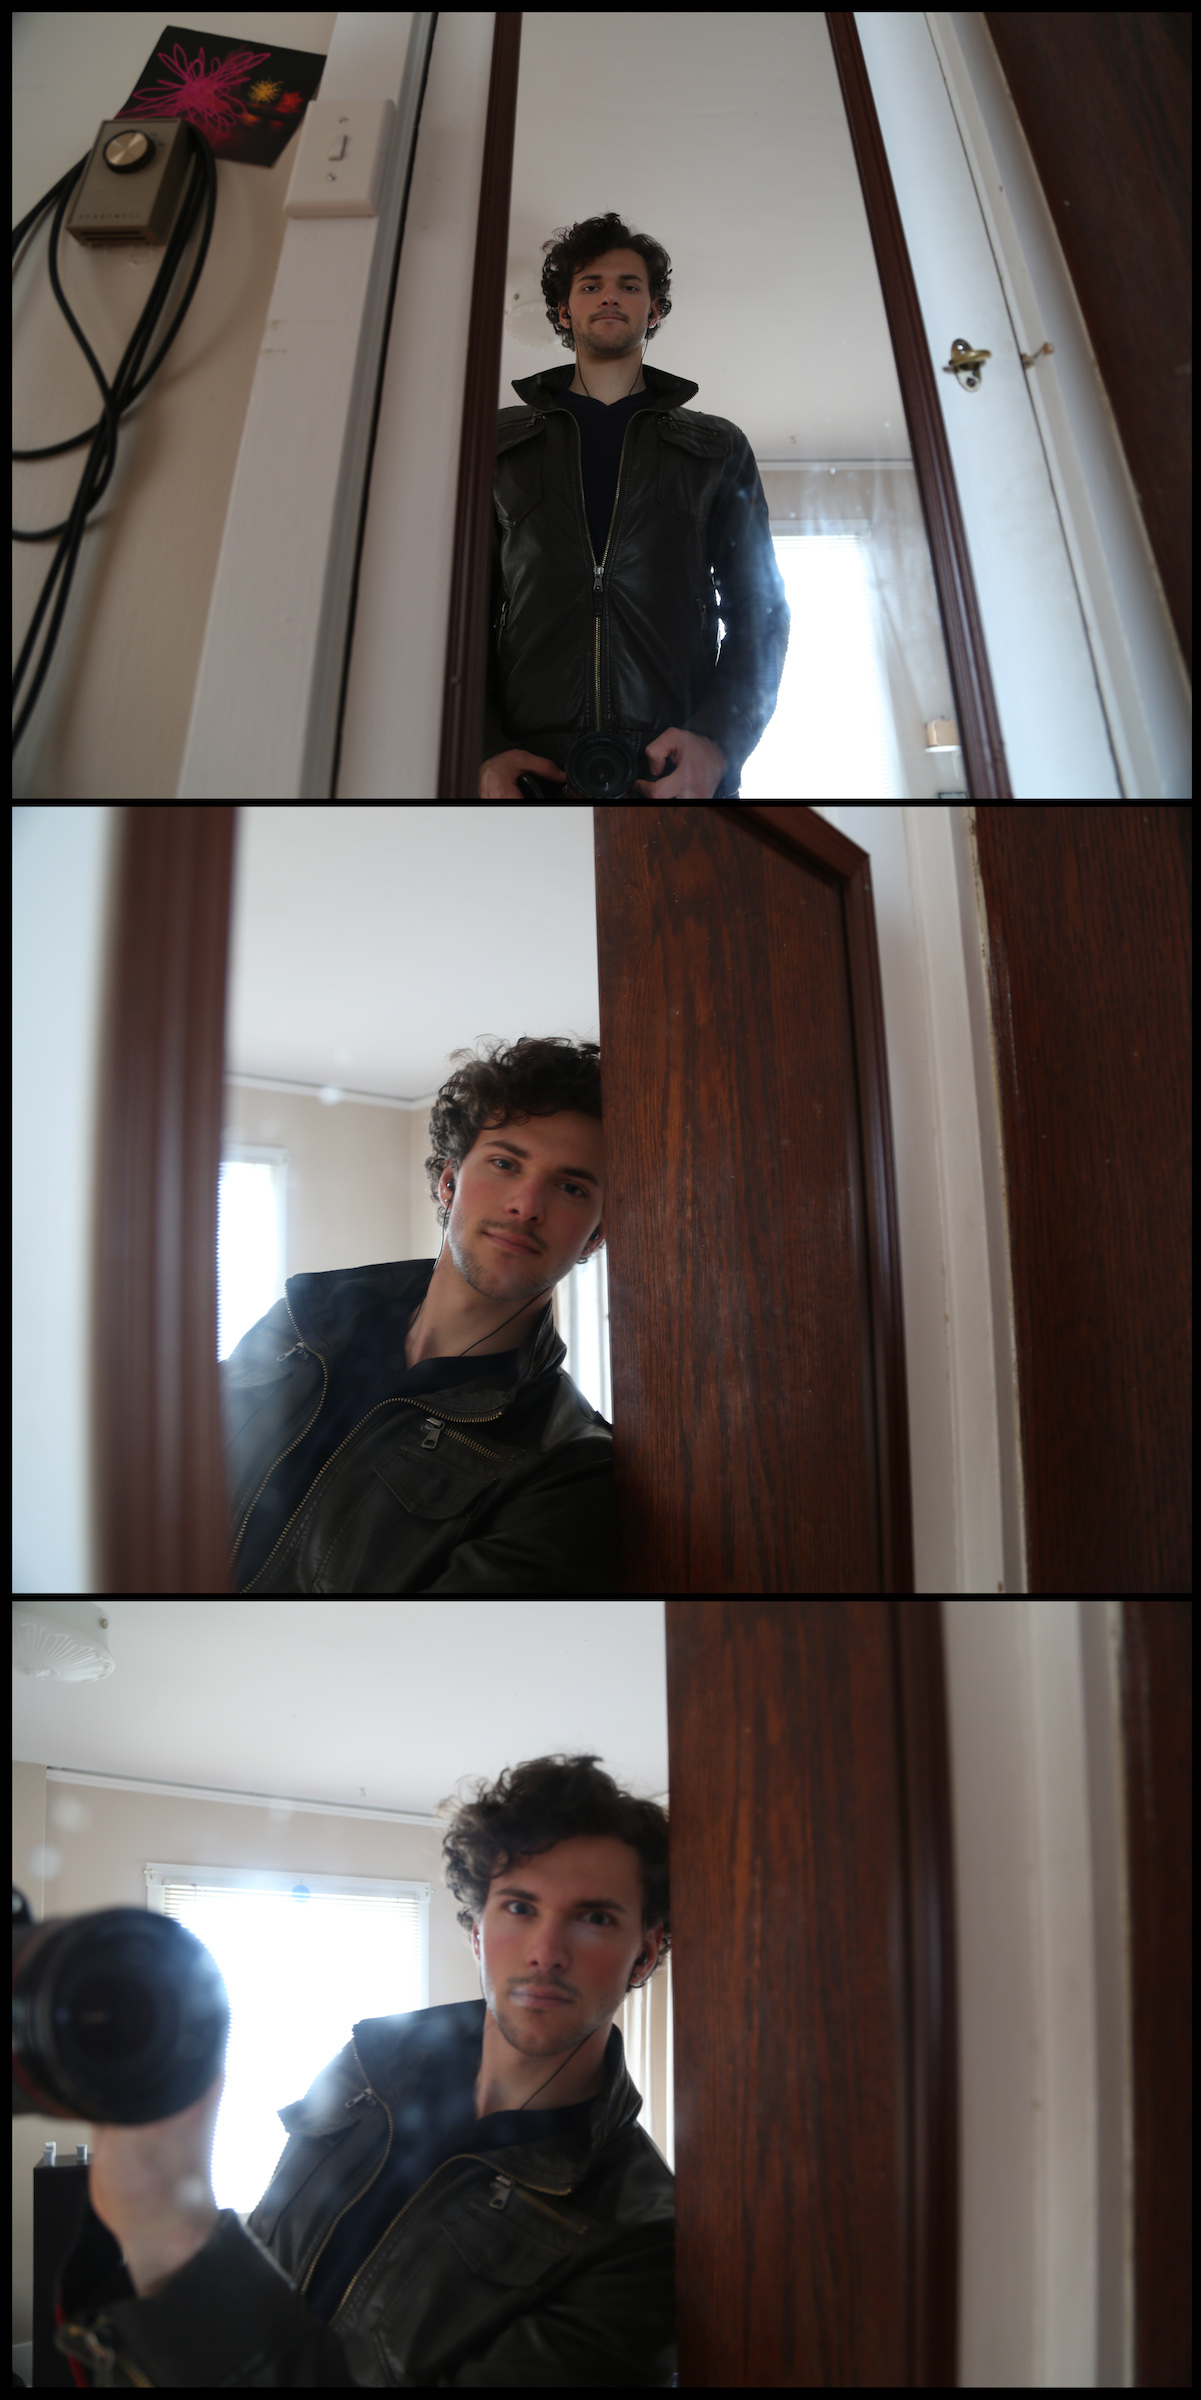 Nicasio selfie #39, Feb. 17:  Moar DSLR selfiez